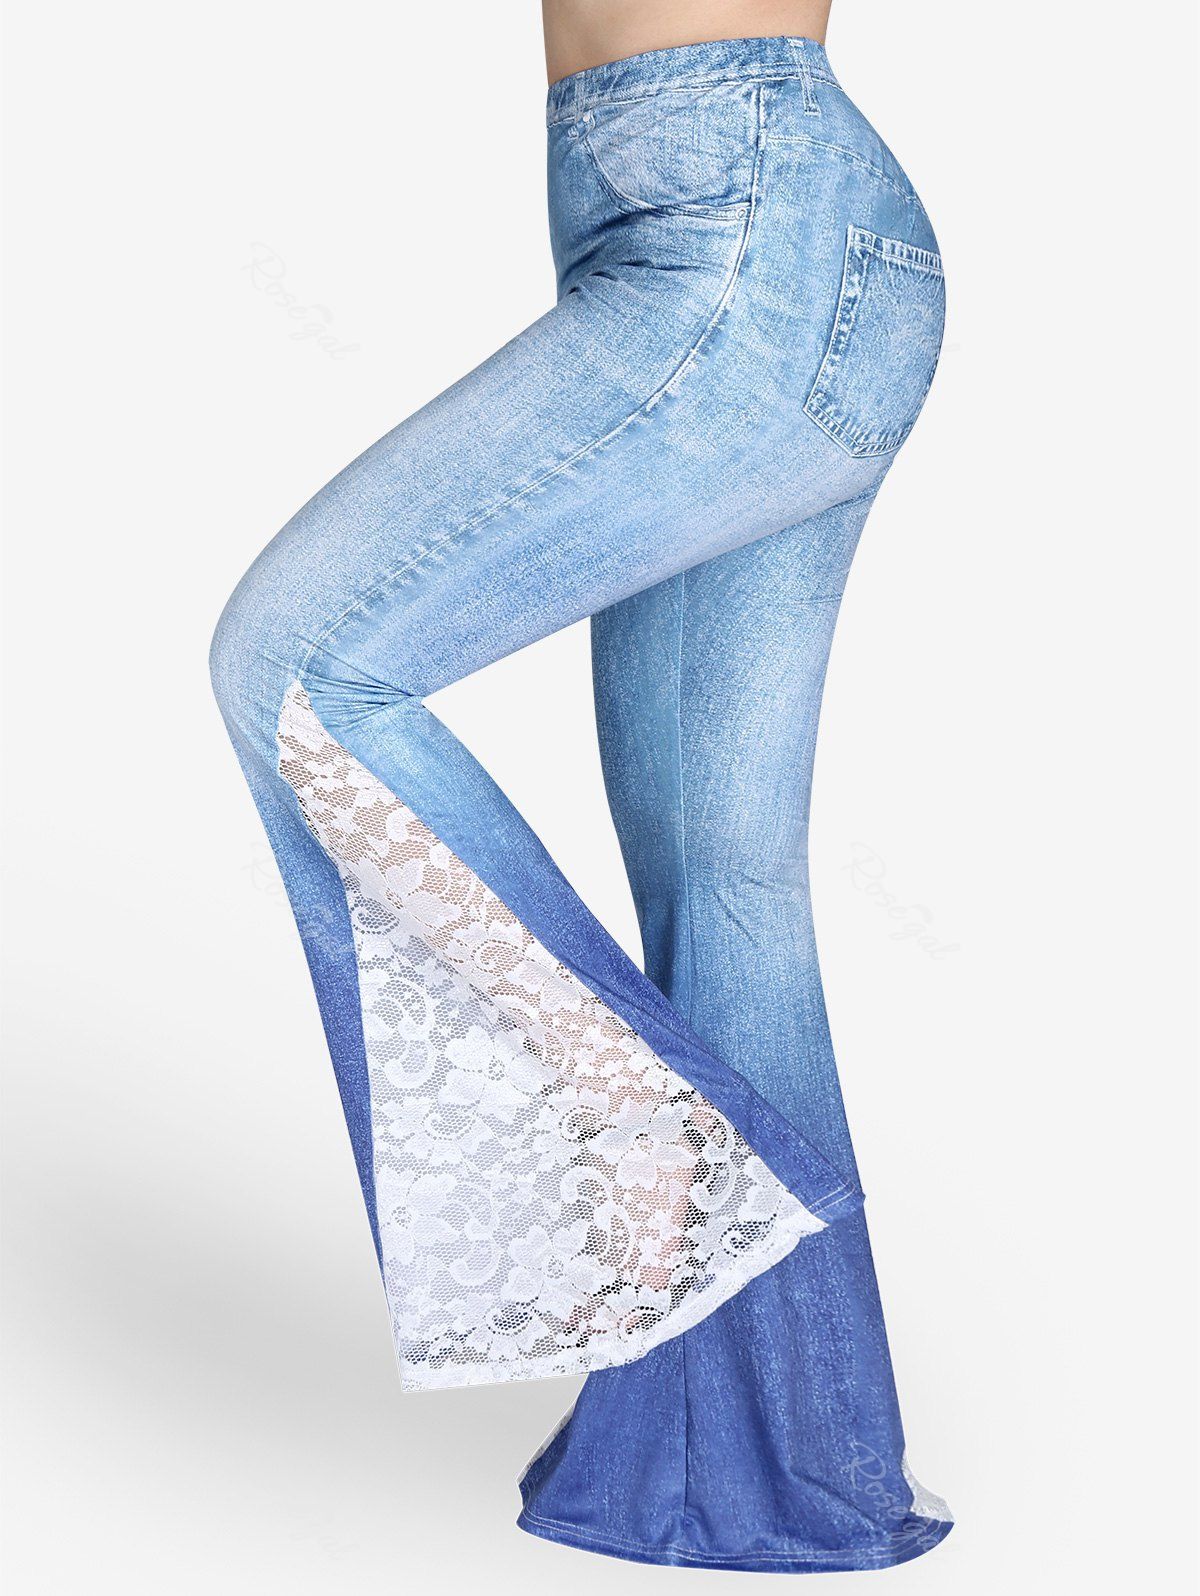 Femme Capri Jeans Déchiré Dentelle Jeans Bleu Clair Délavé Taille 6,8,10,12,14 Hot Pant 